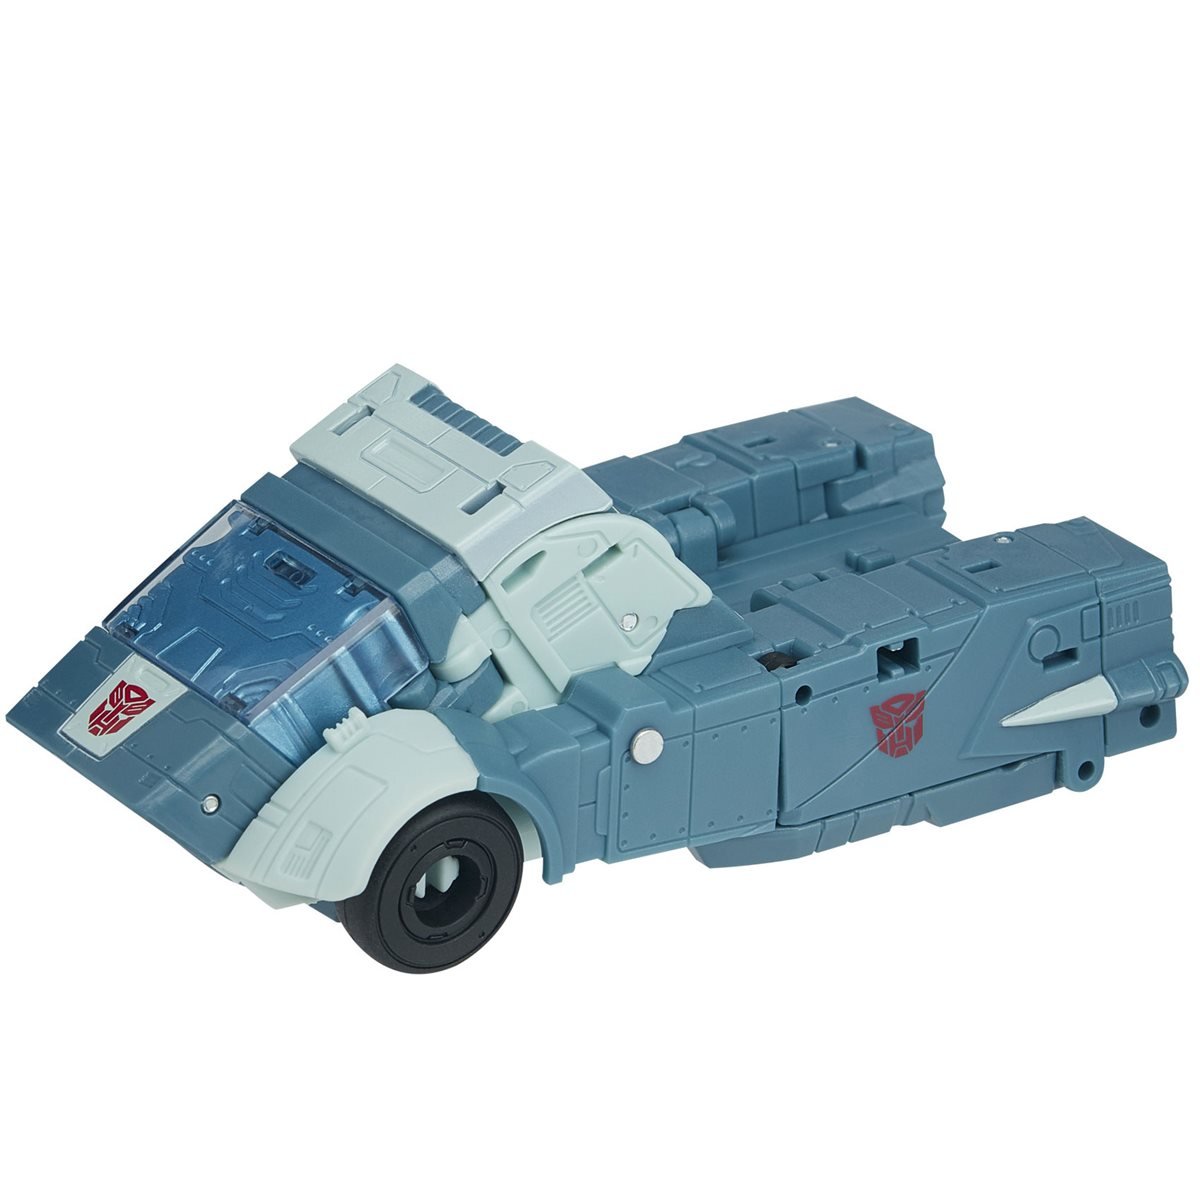 Transformers Studio Series 86-02 Deluxe Kup